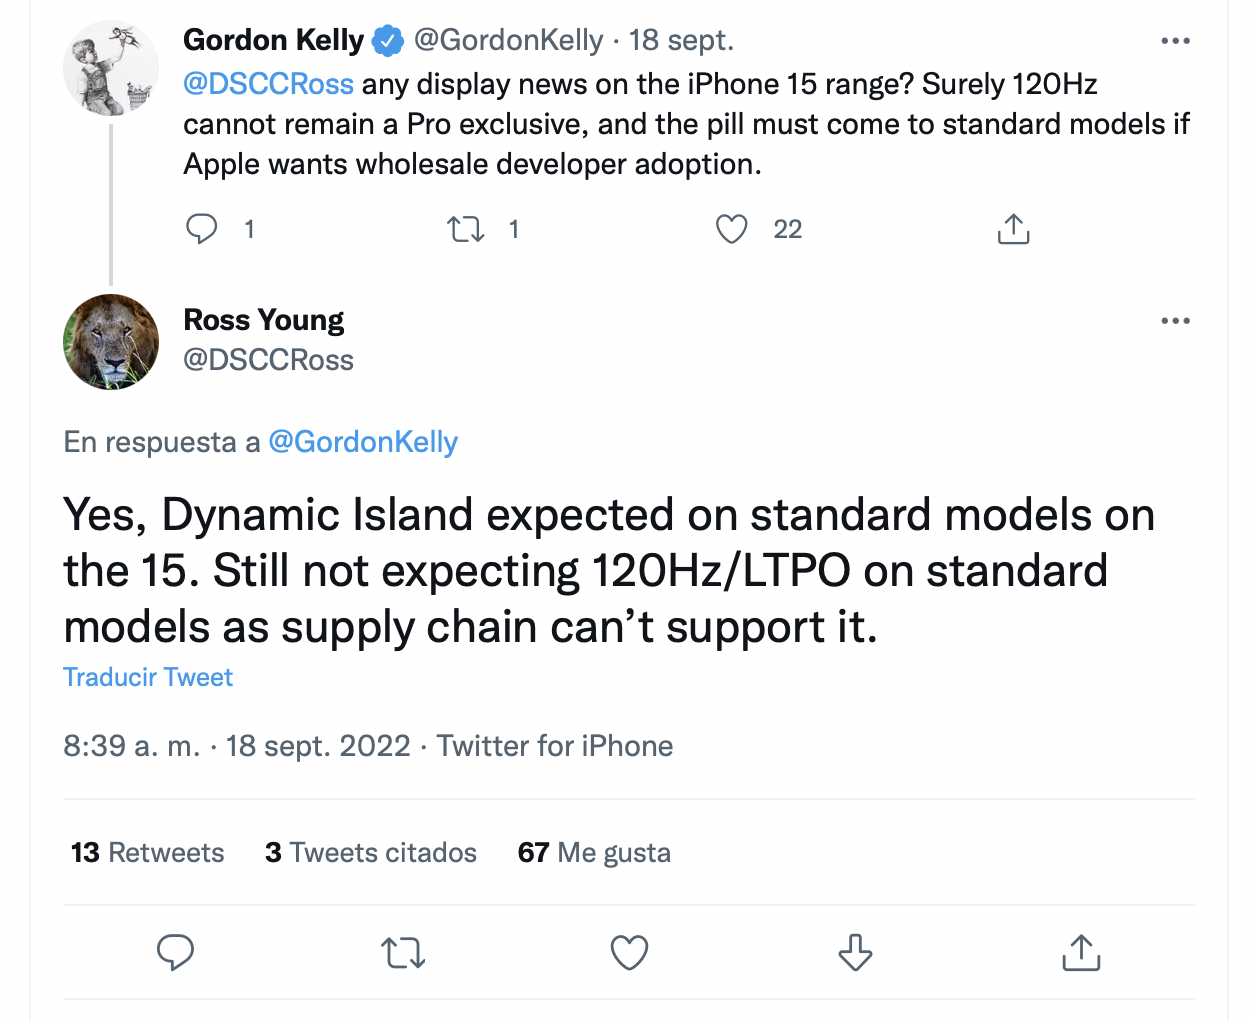 Ross Young habla sobre la Isla Dinámica en los iPhone 15. (foto: Twitter)